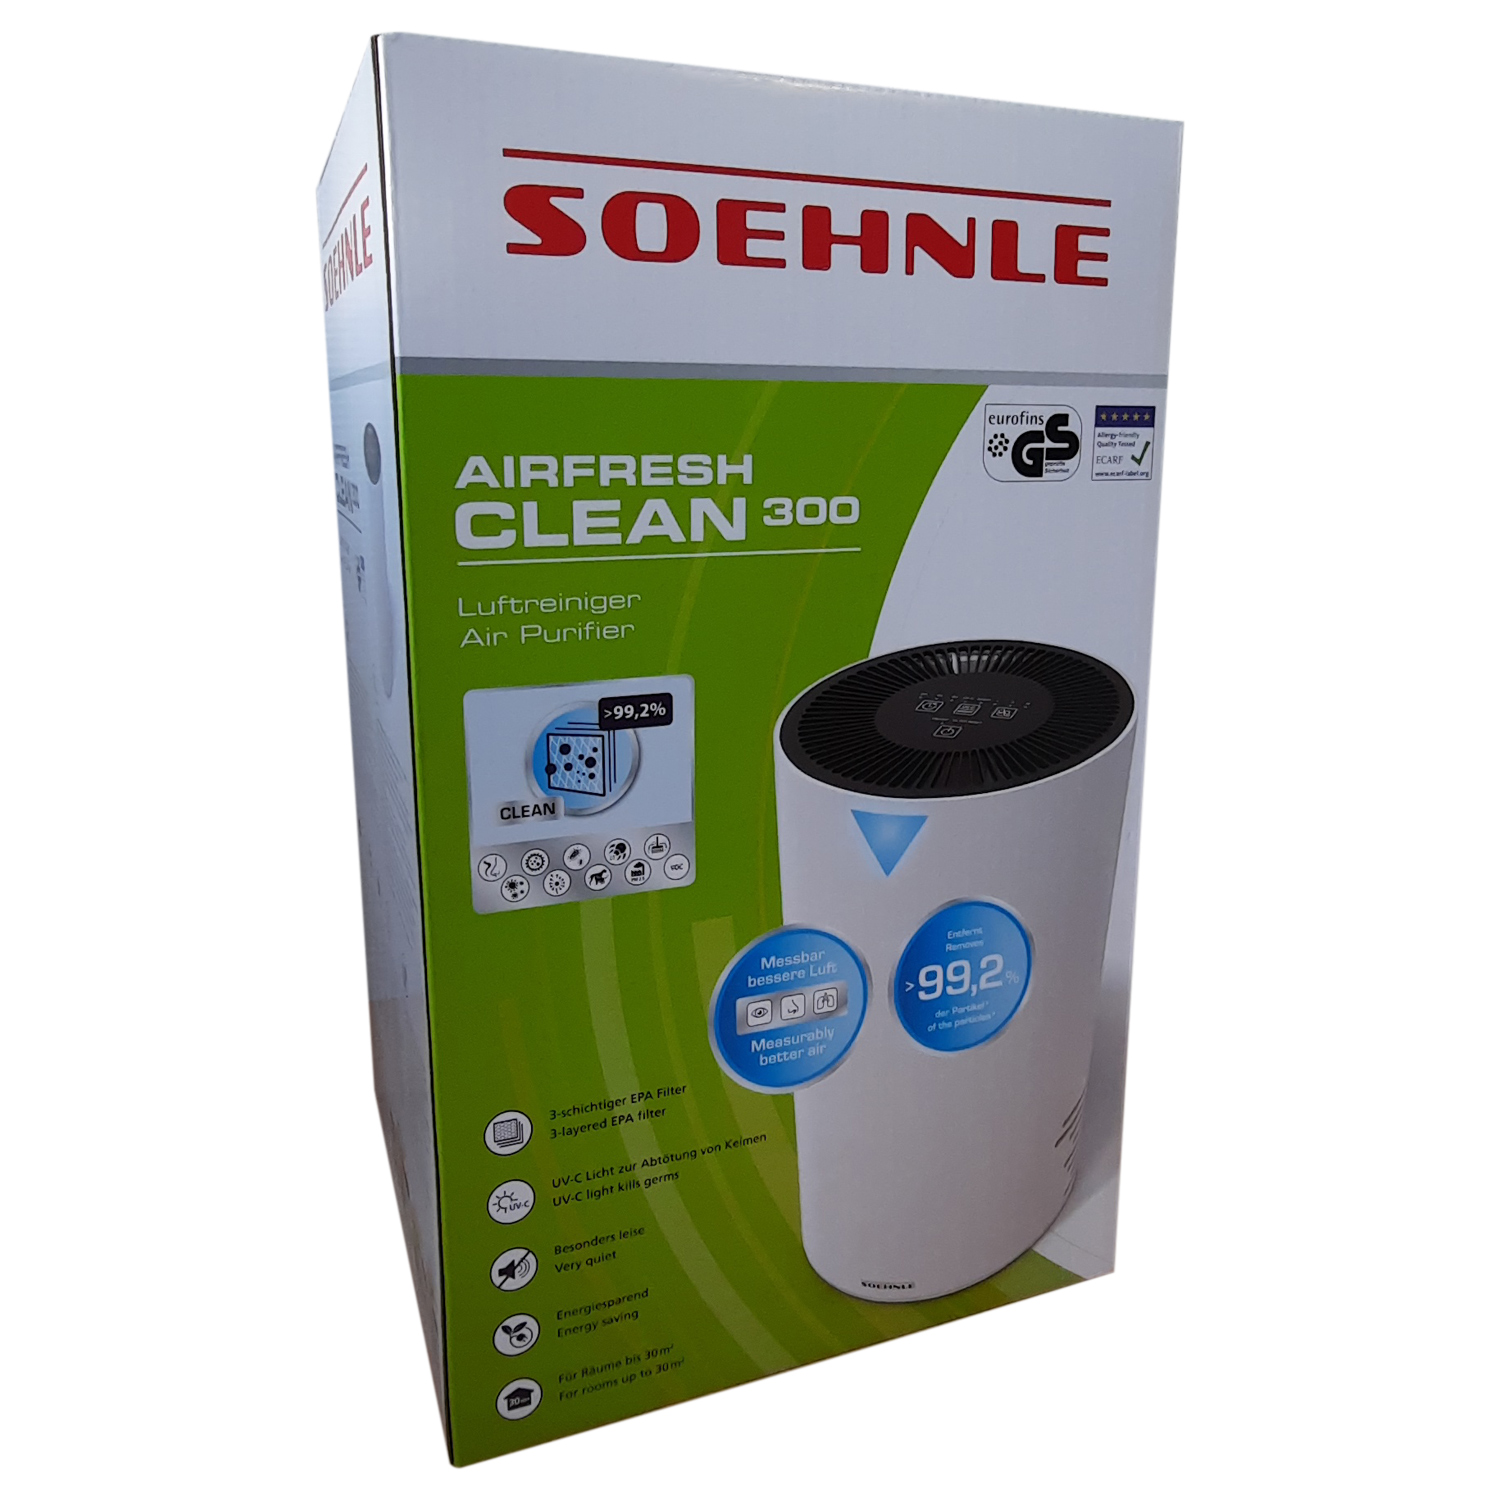 Soehnle Airfresh Clean 300 Luftreiniger mit 4-stufigem Reinigungssystem